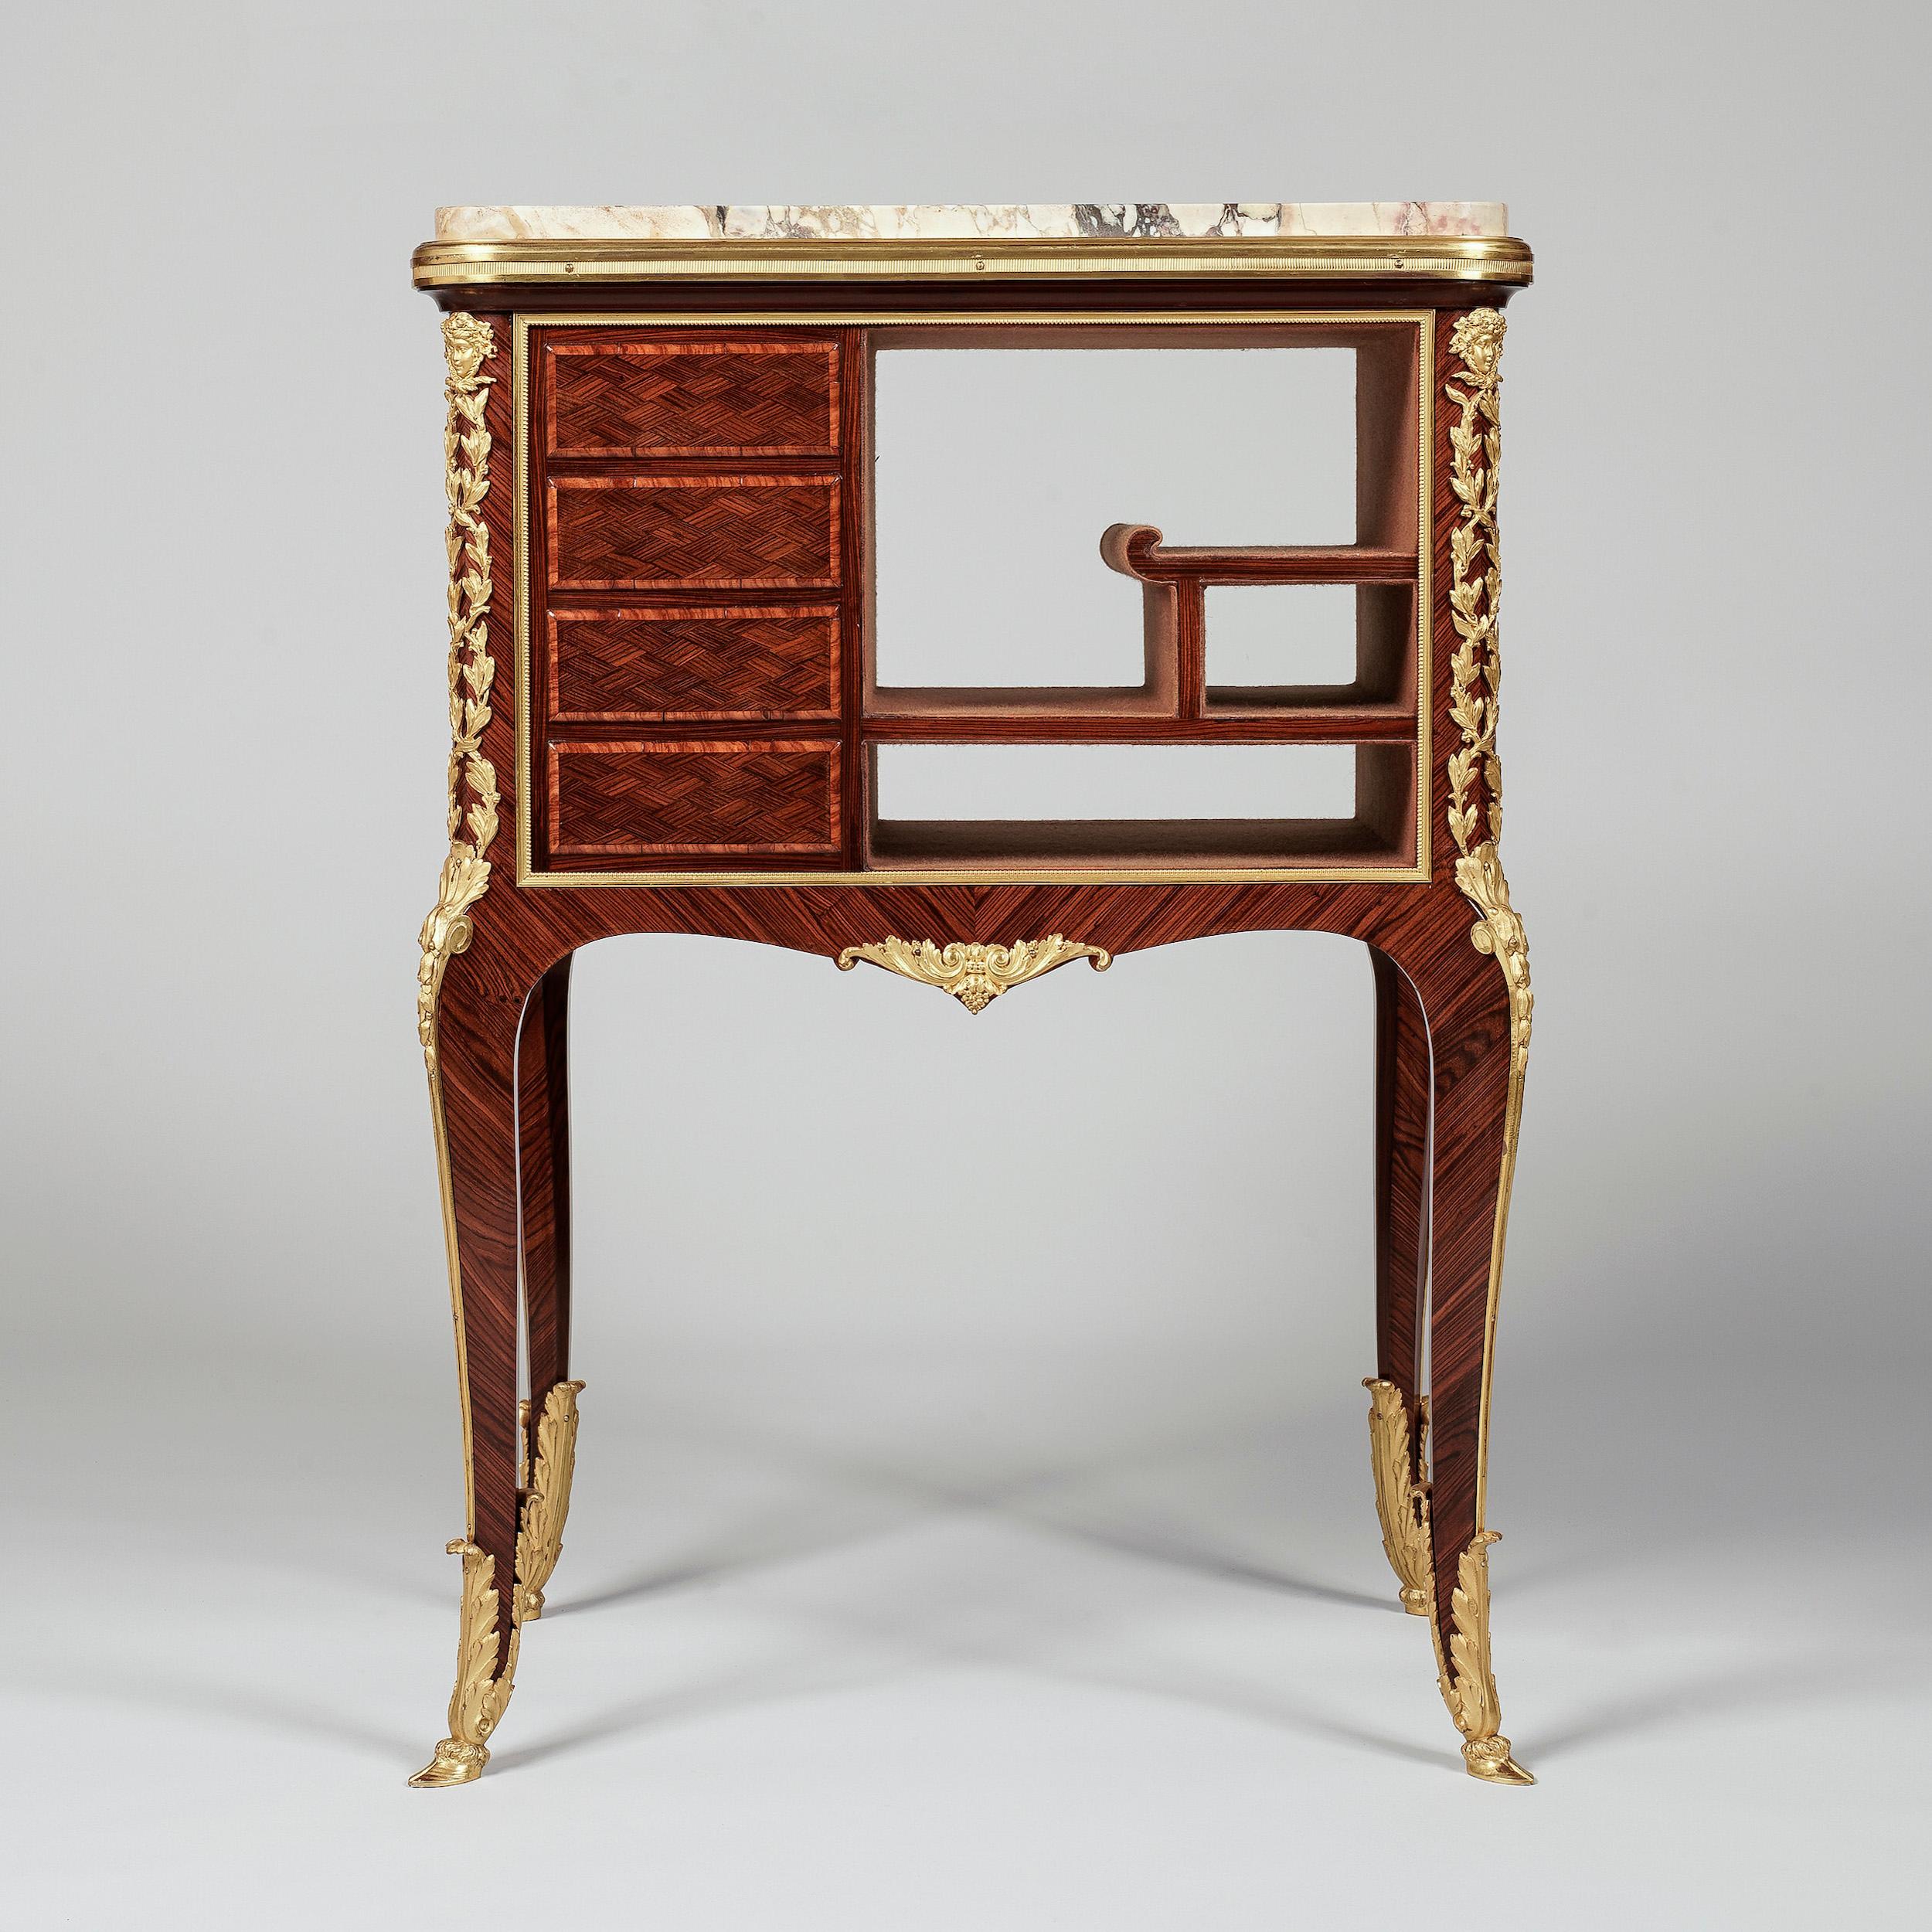 Une table de style Louis XVI Ambulante
Par Francois Linke

Le maître ébéniste a utilisé le bois de roi et le bois de tulipier avec beaucoup d'effet, avec des montures en bronze doré feuillagé, des sabots en forme de sabot et de feuille d'acanthe